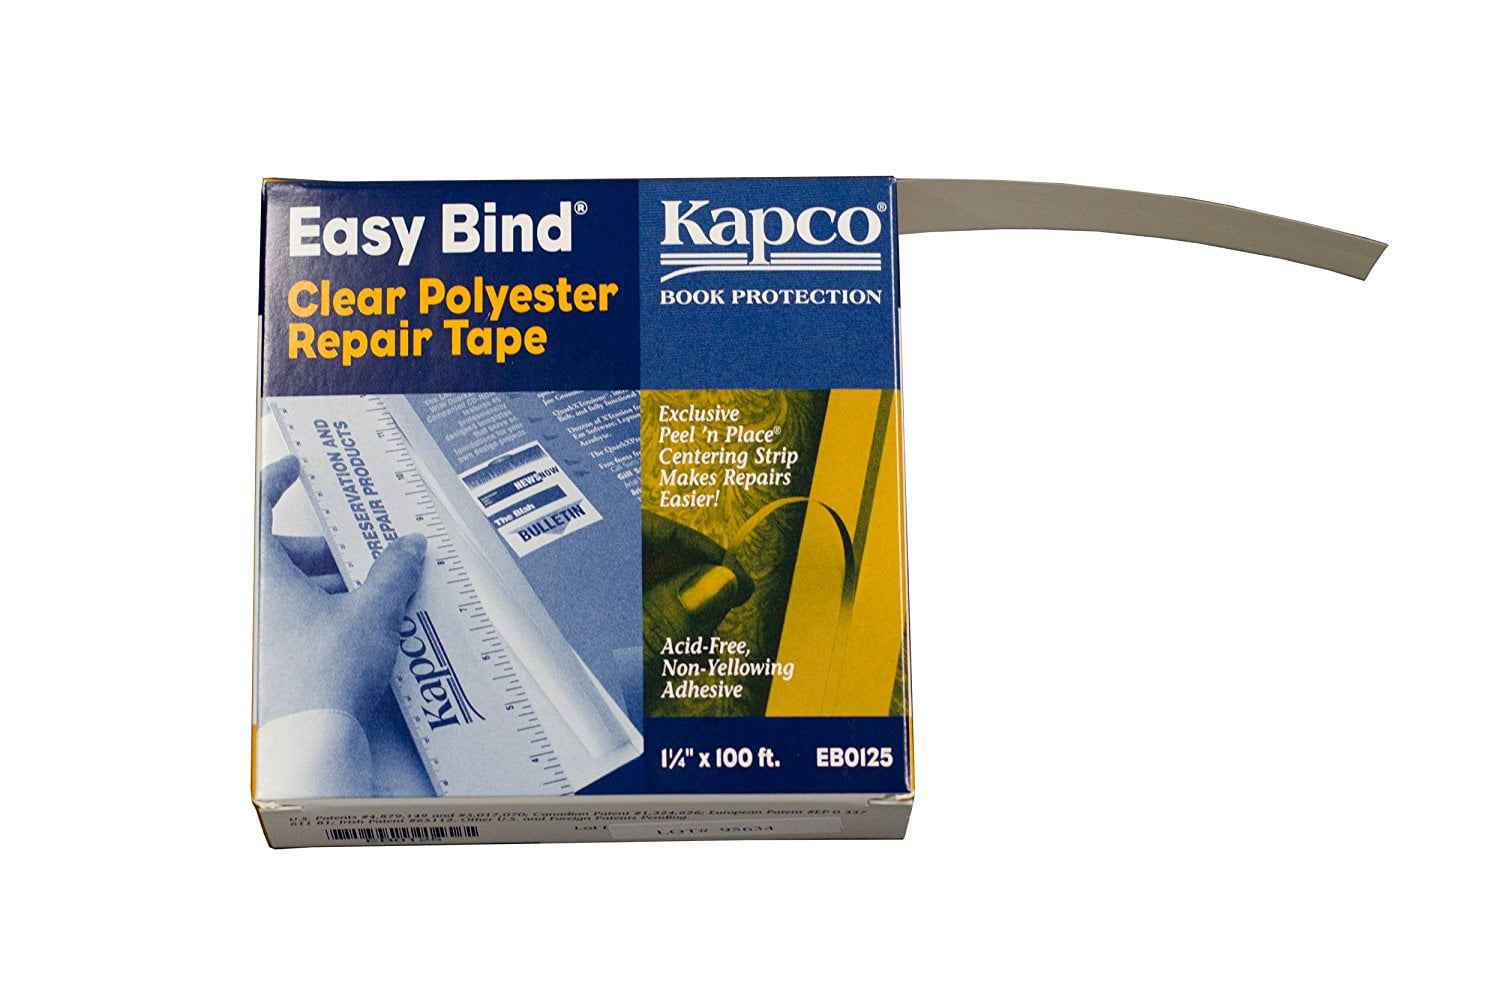 Kapco Book Protection Easy Bind Repair Tape 1 1/4" wide x 100' long 